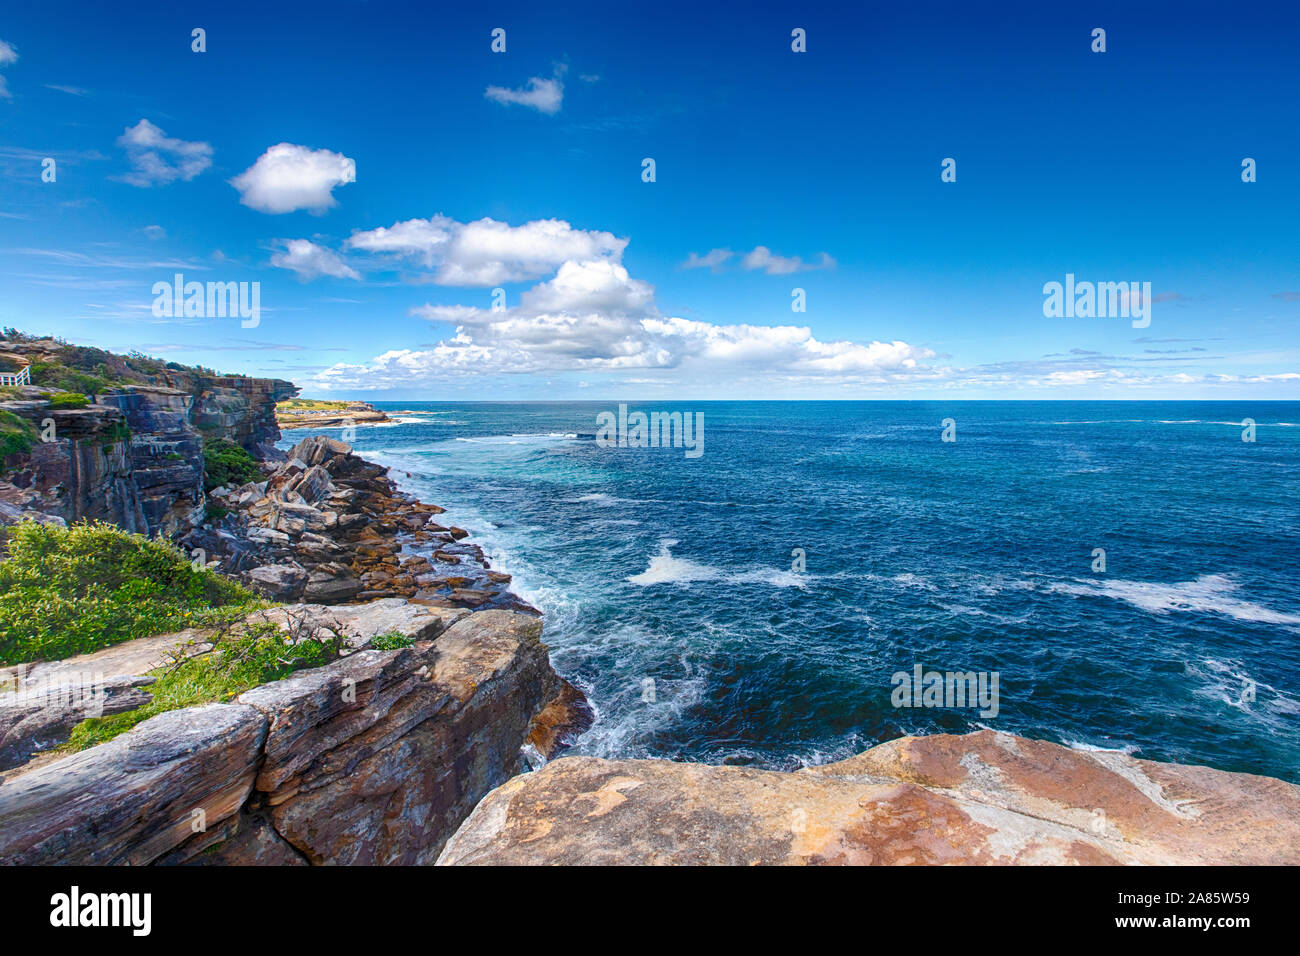 Coogee nach Bondi coastwalk. Blick auf Gordons Bay in New South Wales, Sydney, Australien. Berühmten Strand Spaziergang auf der Tasman Sea coast Stockfoto